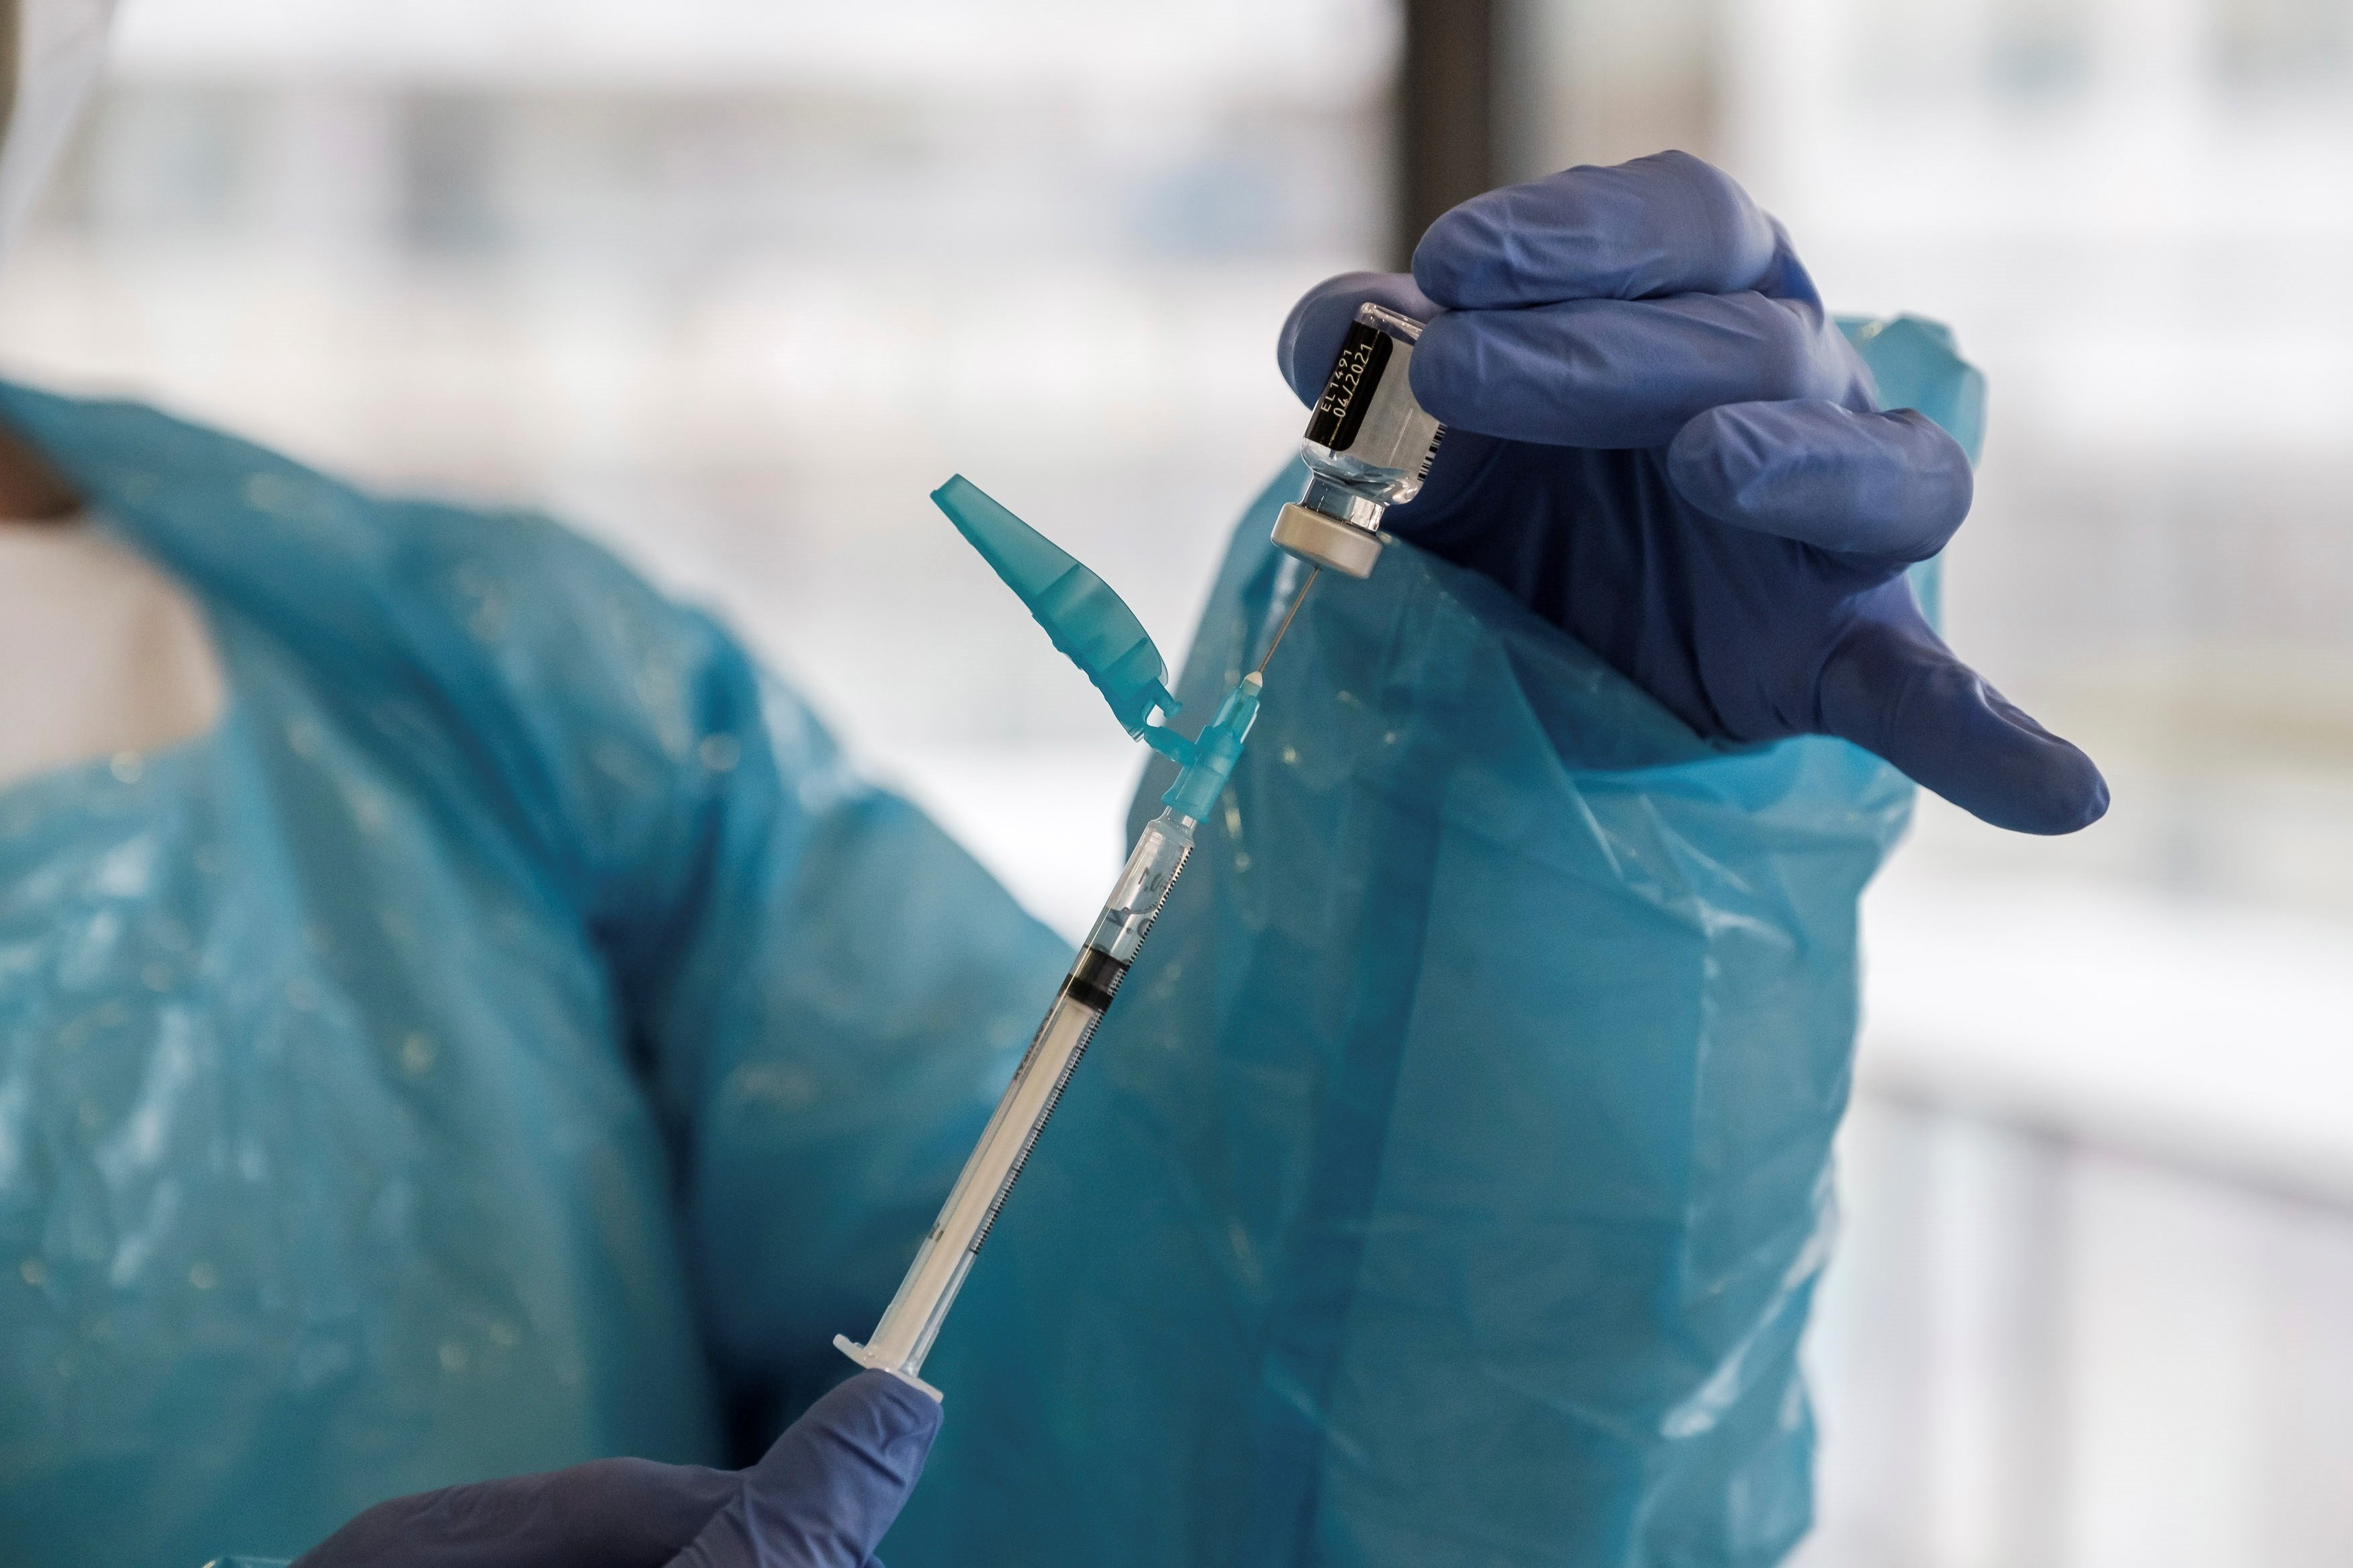 Administrar una dosis de vacuna contra la Covid puede favorecer las mutaciones